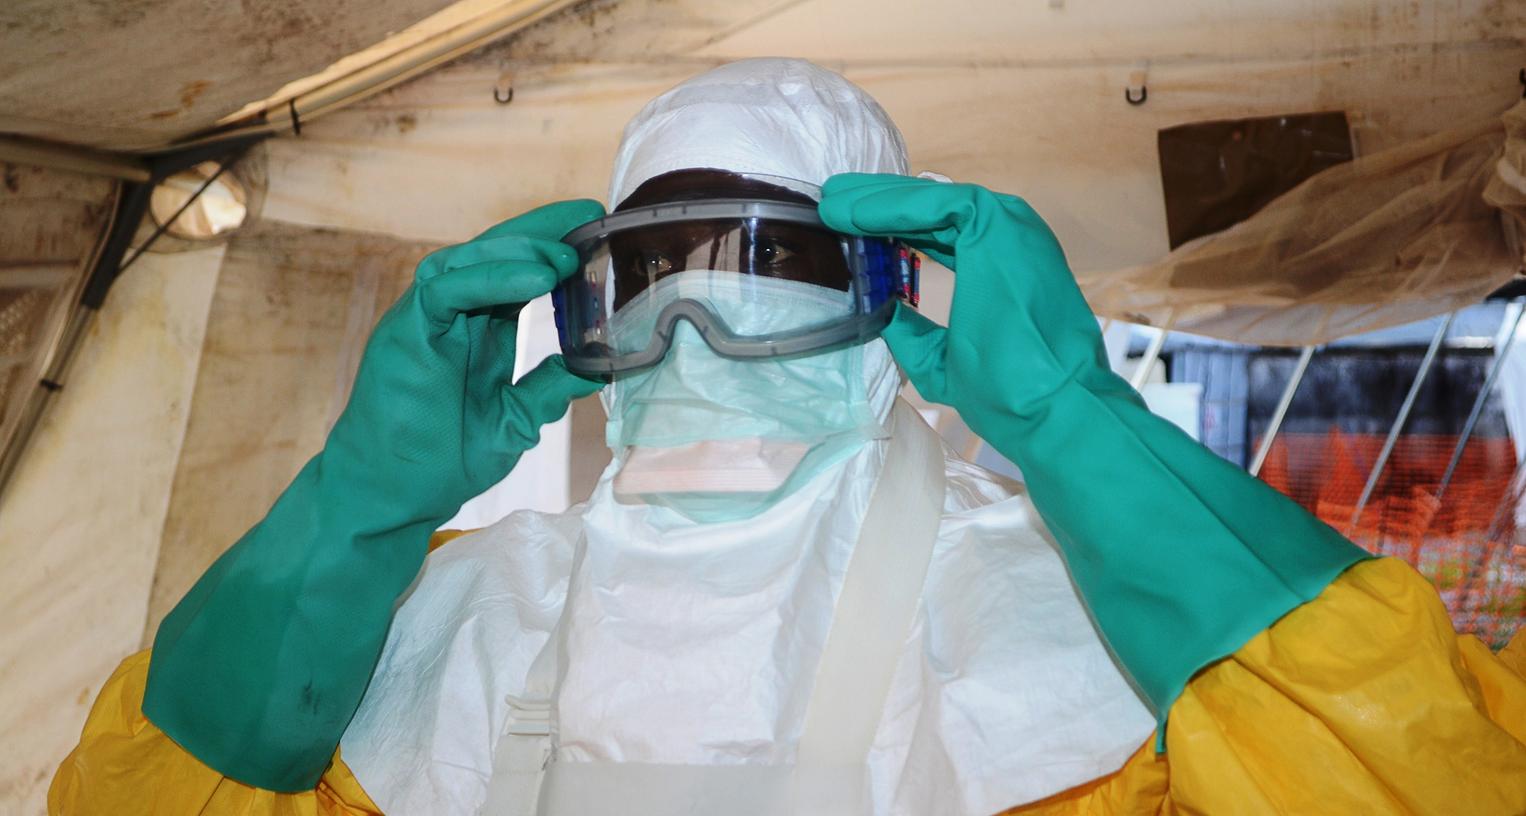 Falls Verdachtsfälle von Ebola in Franken auftauchen sollten, gibt es bereits Notfallpläne.